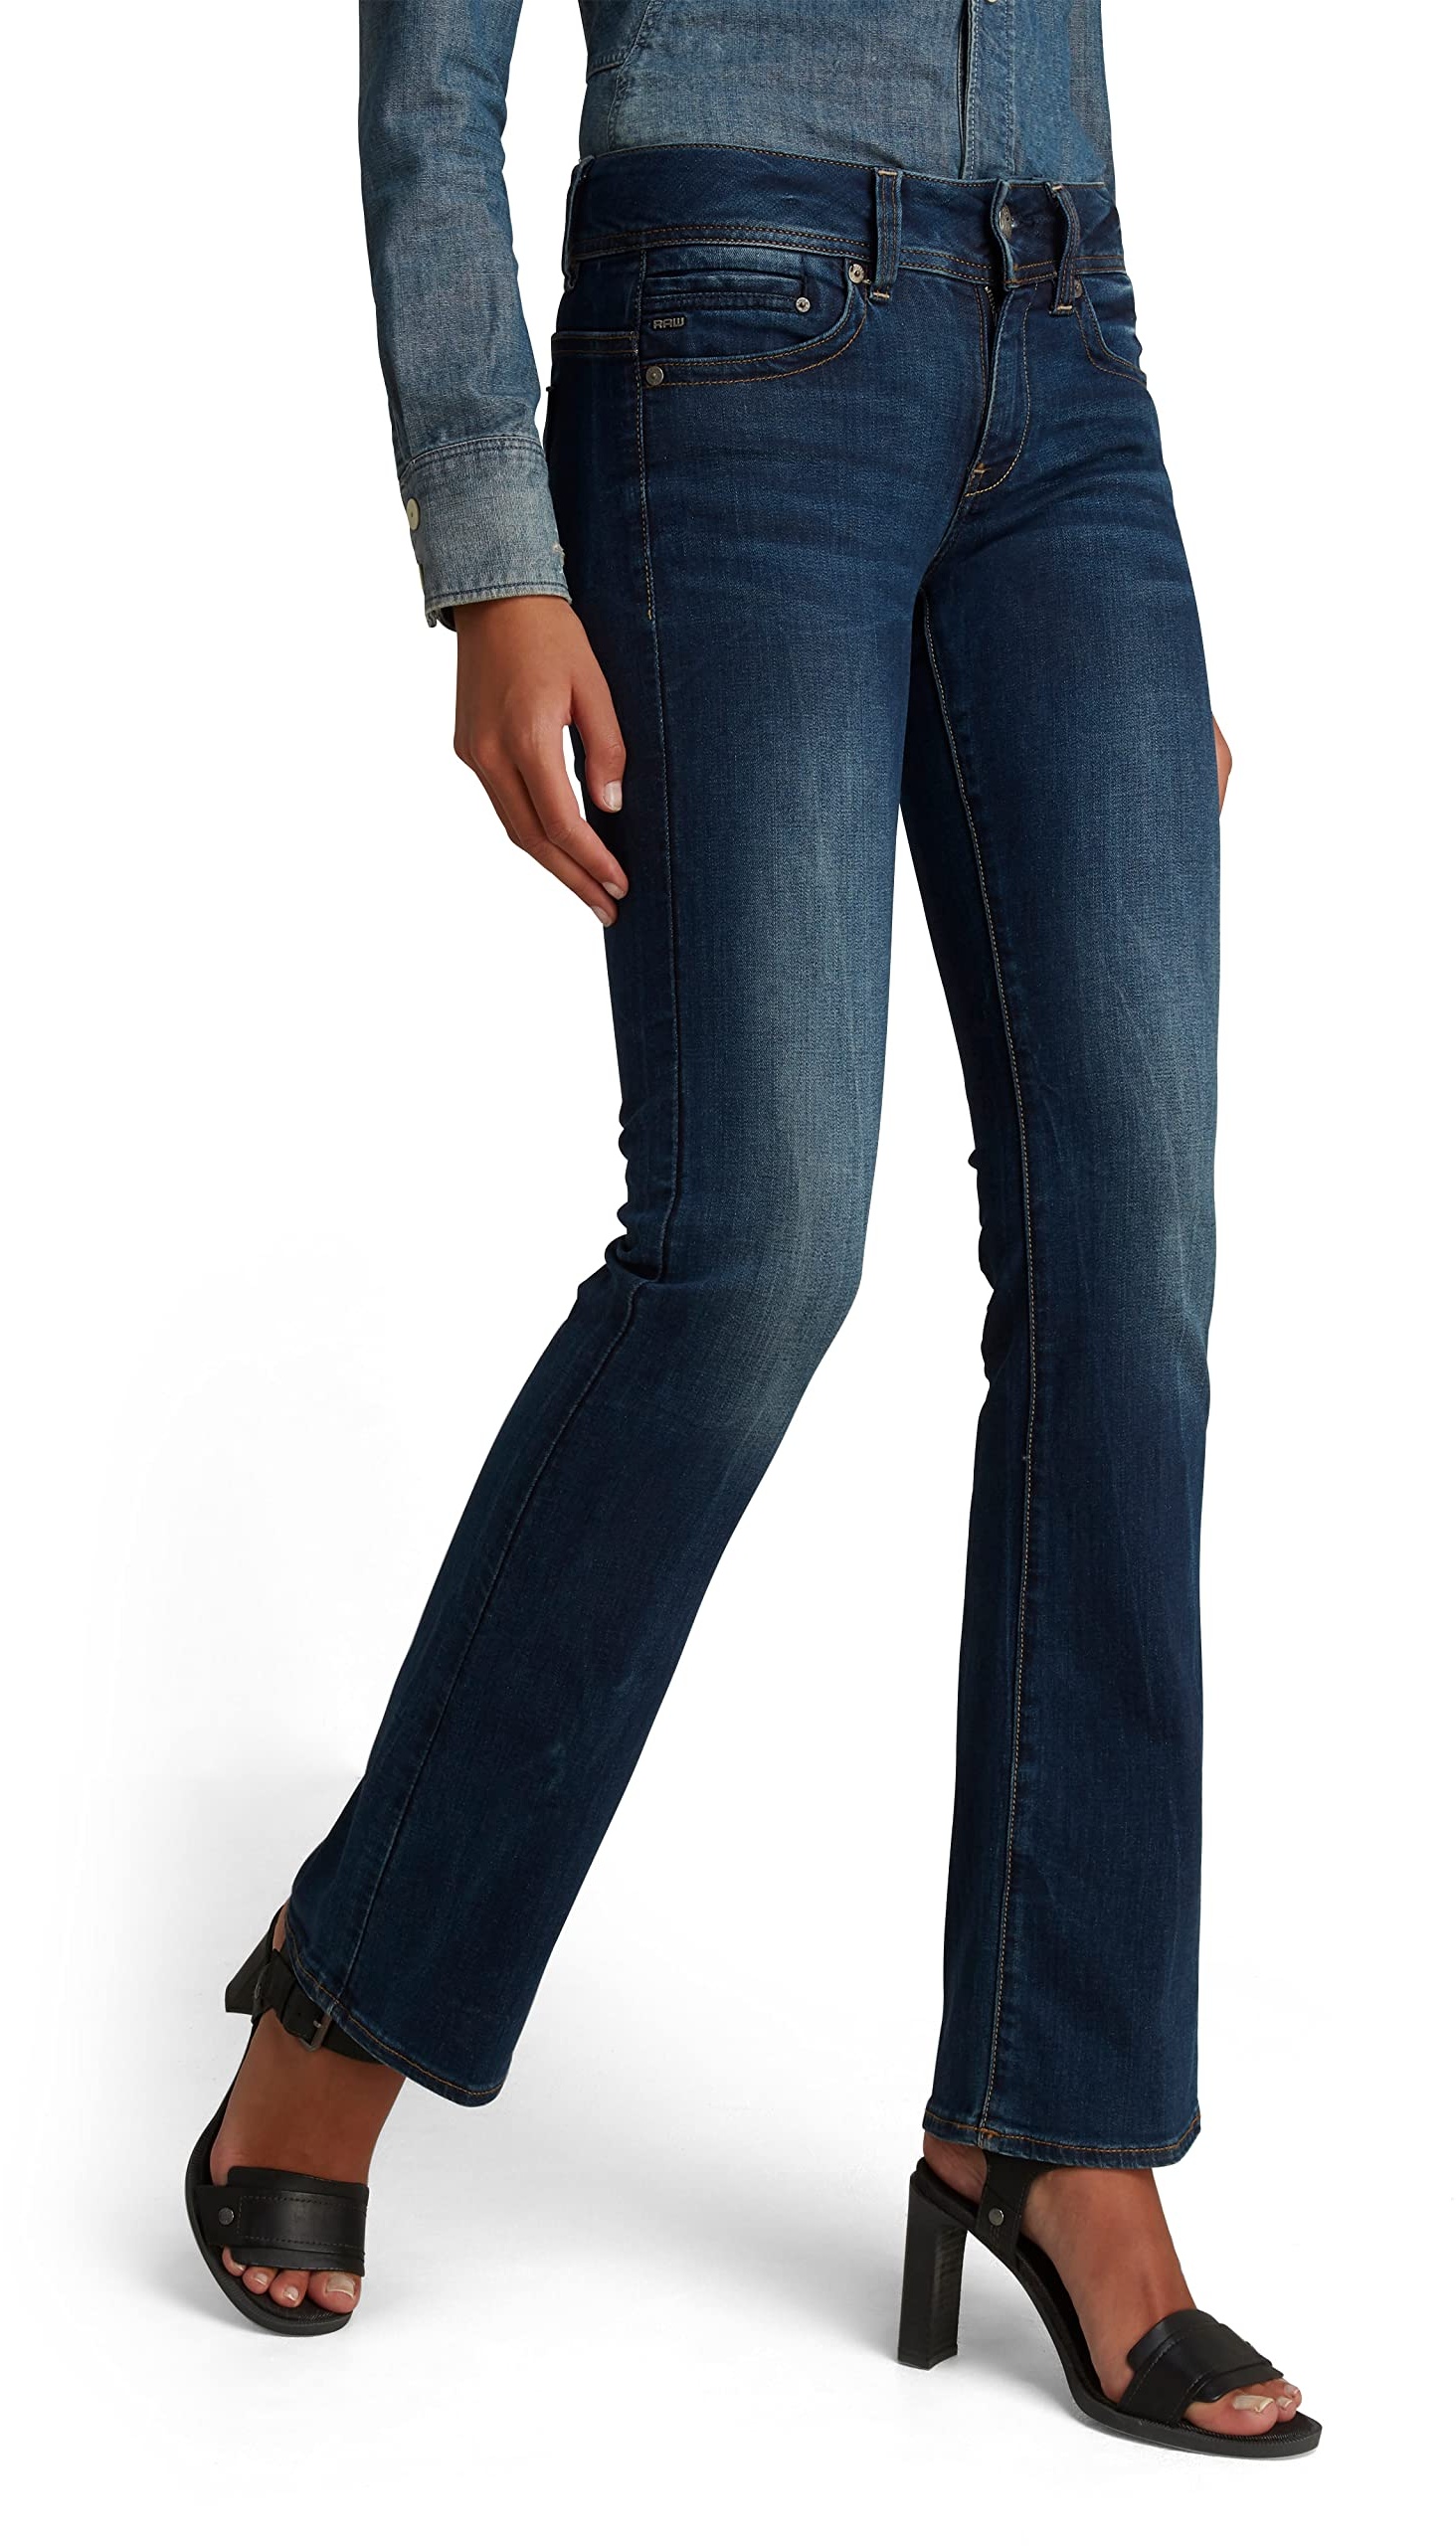 G-STAR RAW Damen Midge Bootcut Jeans, Blau (dk aged D01896-6553-89), 25W / 32L